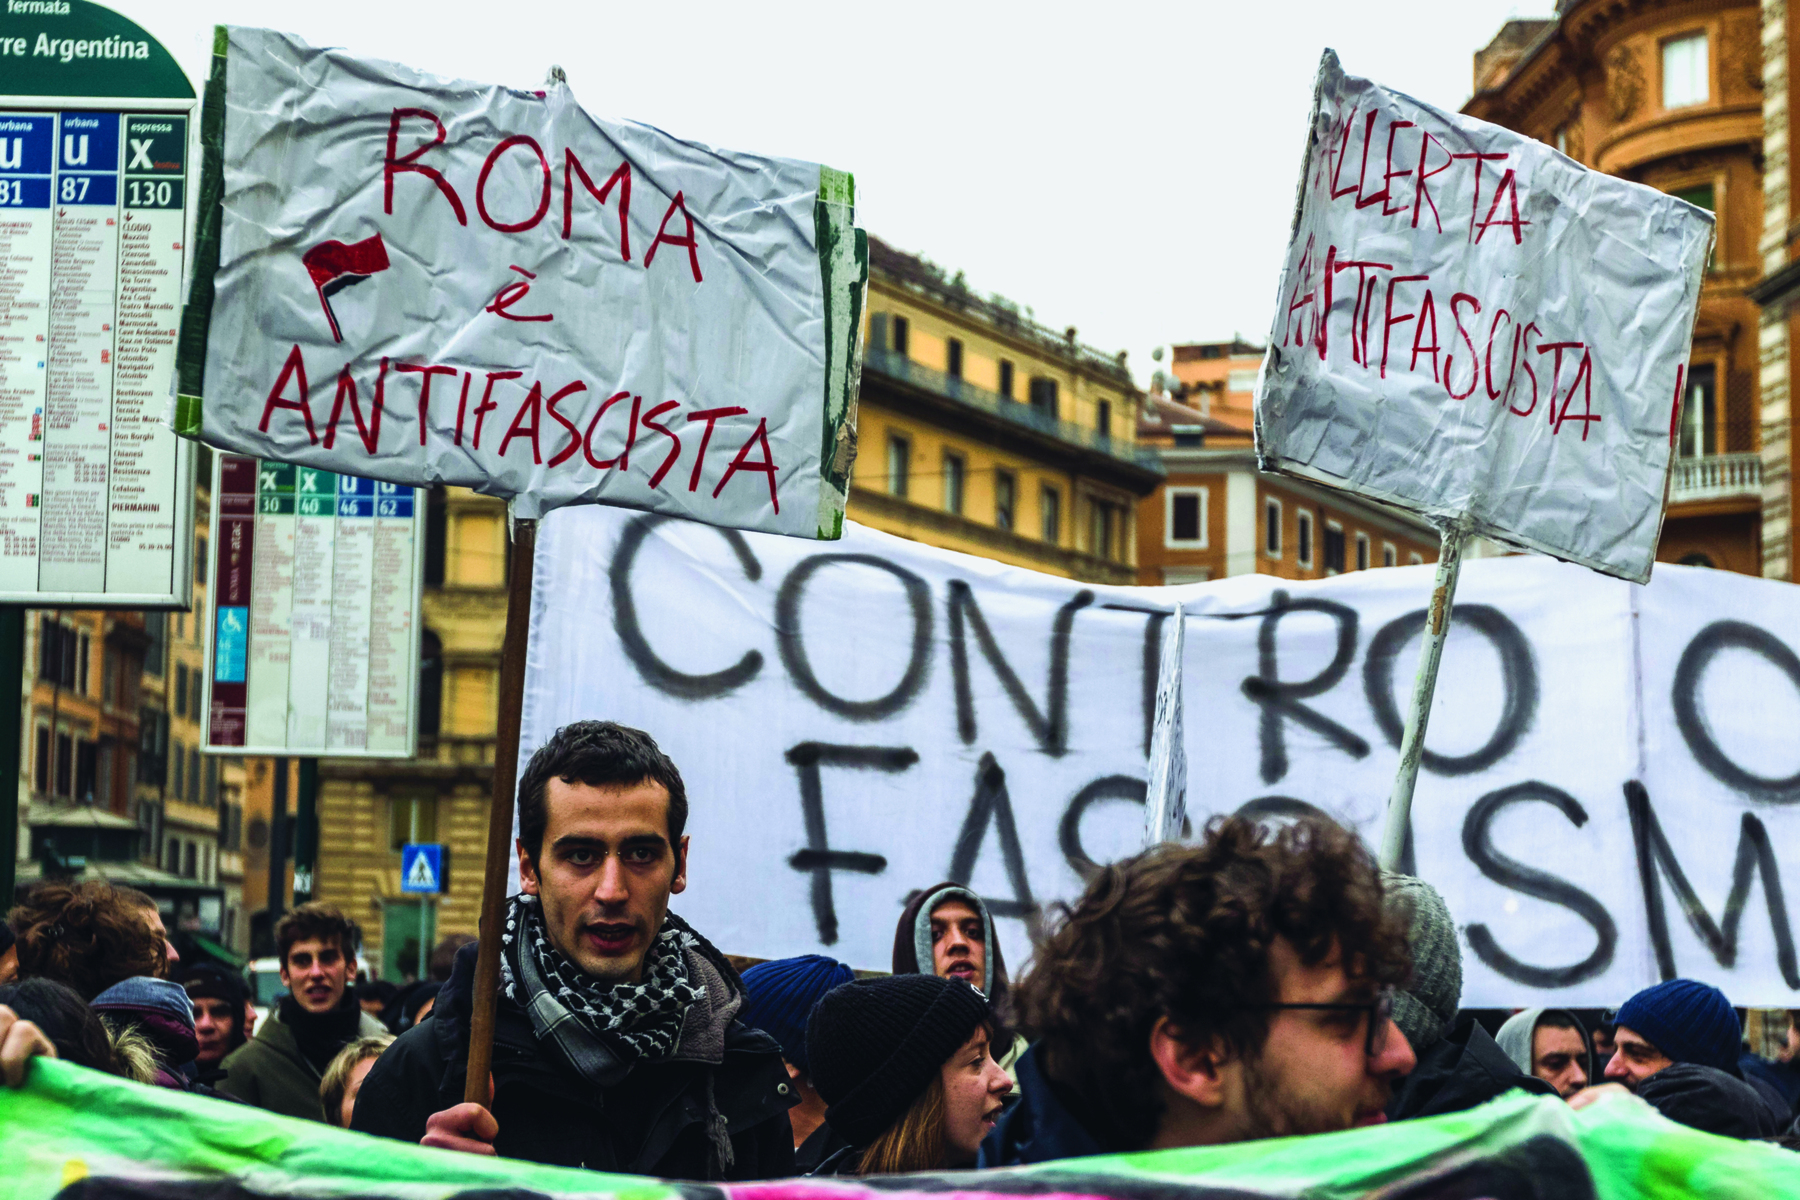 Fotografia. Pessoas na rua em um protesto. Carregam cartazes e faixas escritos à mão. À frente um rapaz carrega um cartaz com os dizeres: ROMA É ANTIFASCISTA.